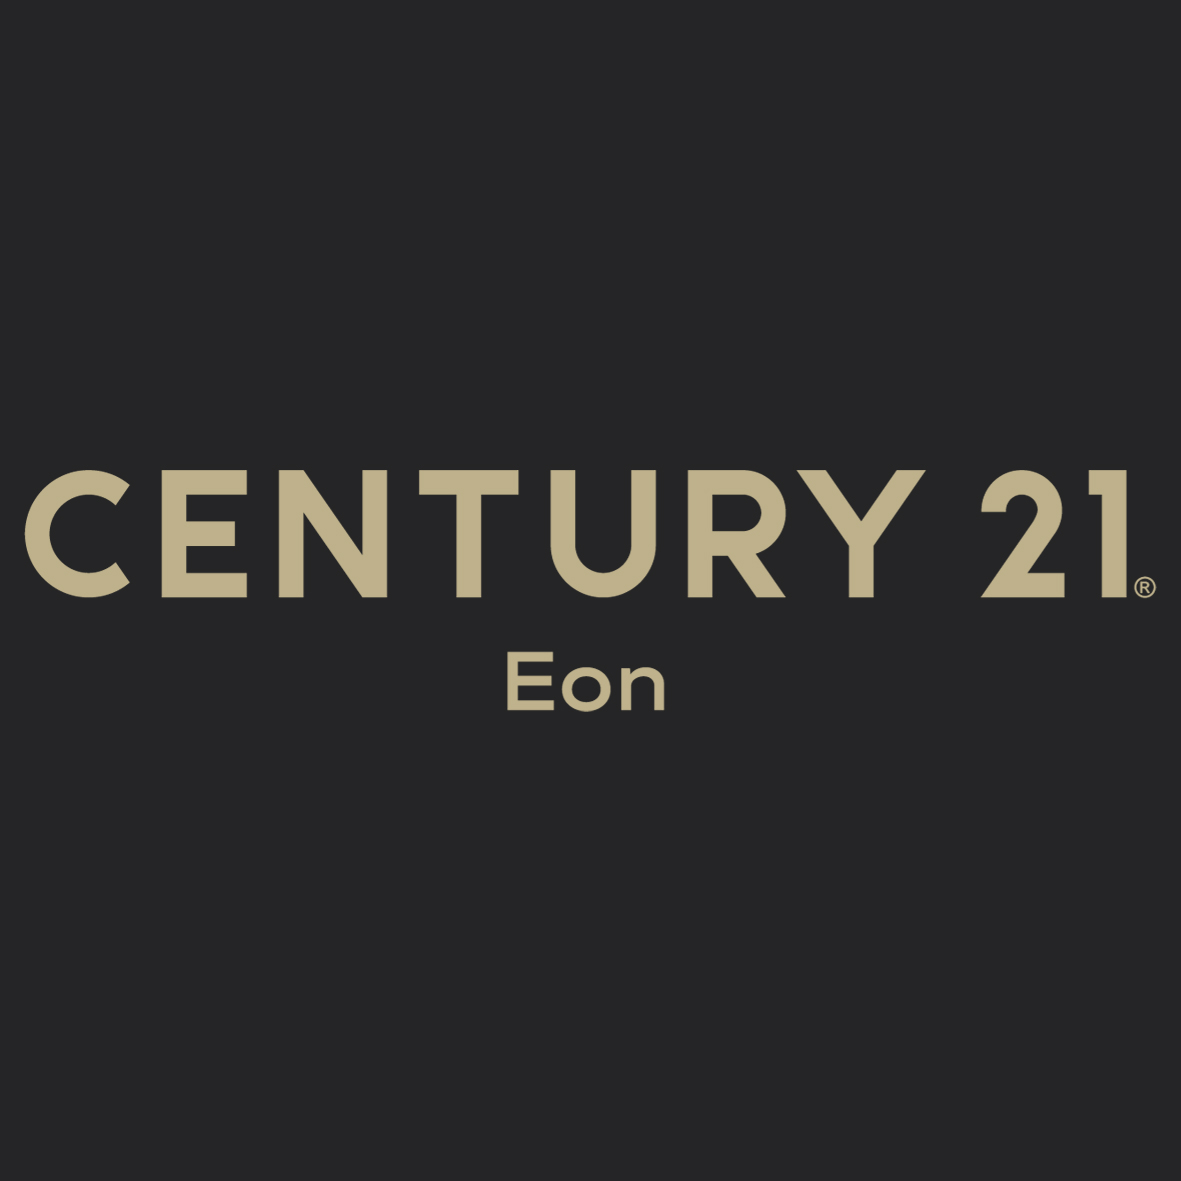 CENTURY 21 Eon